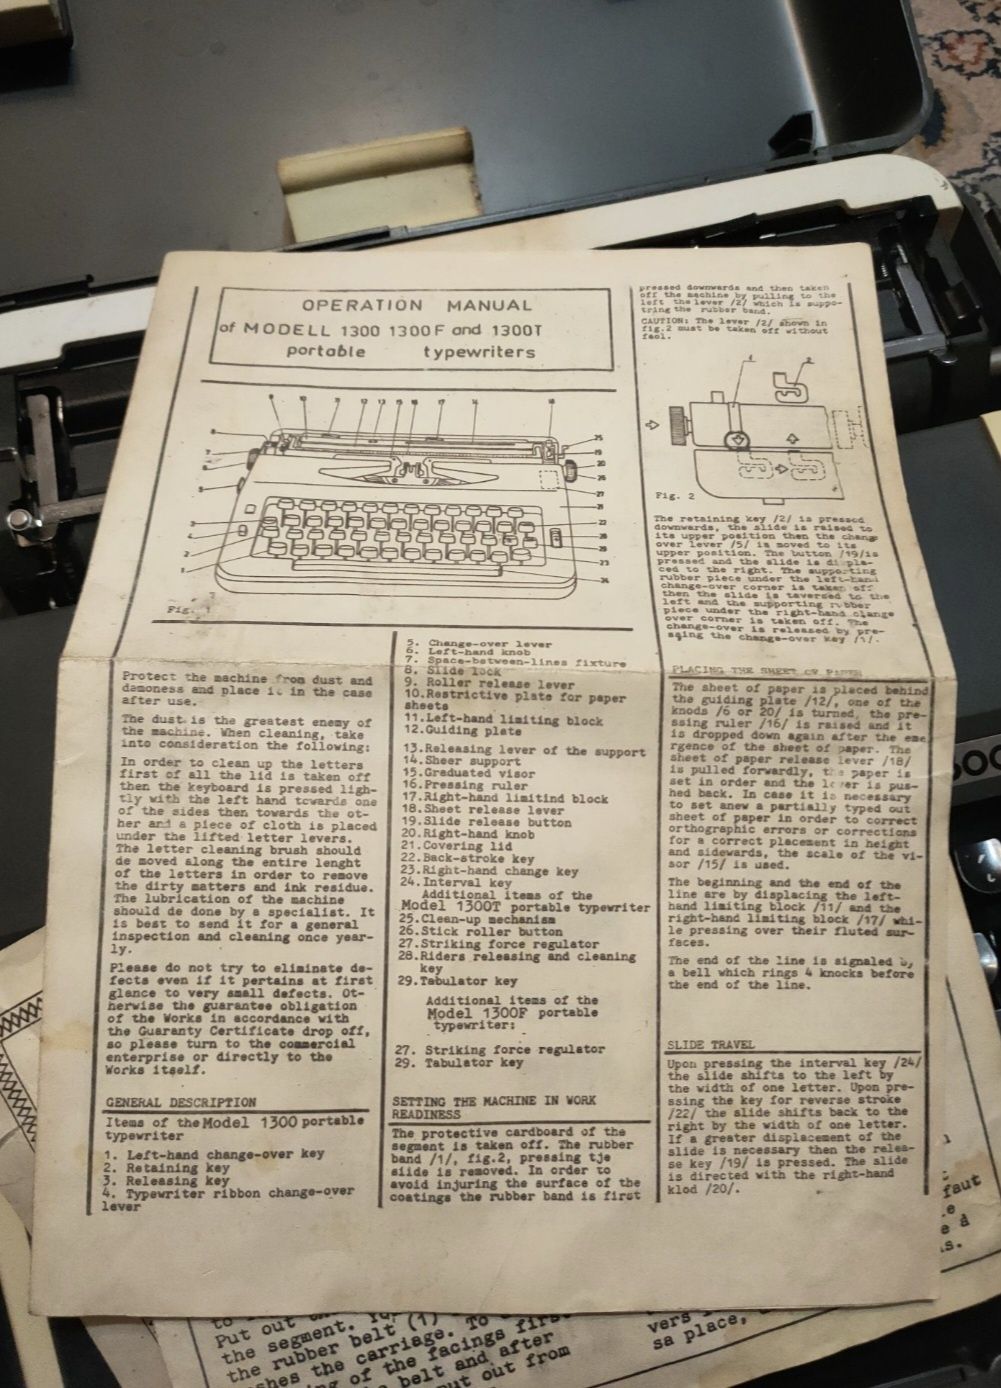 Kompletna sprawna maszyna do pisania Hebros 1300f.